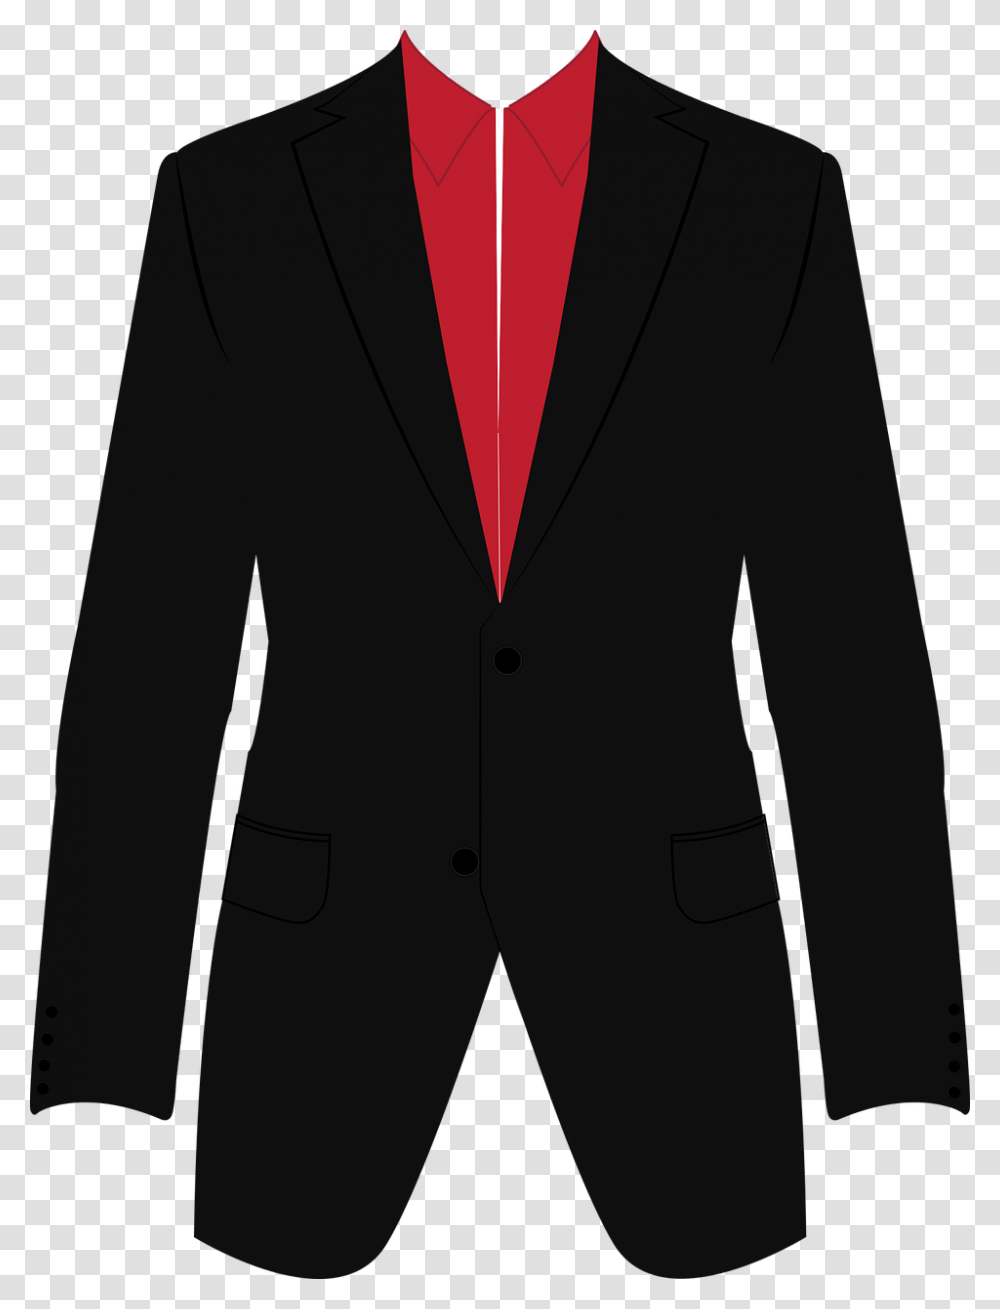 Suit Business Icon Man White Black Tie Design Business Suit, Overcoat, Apparel, Tuxedo Transparent Png